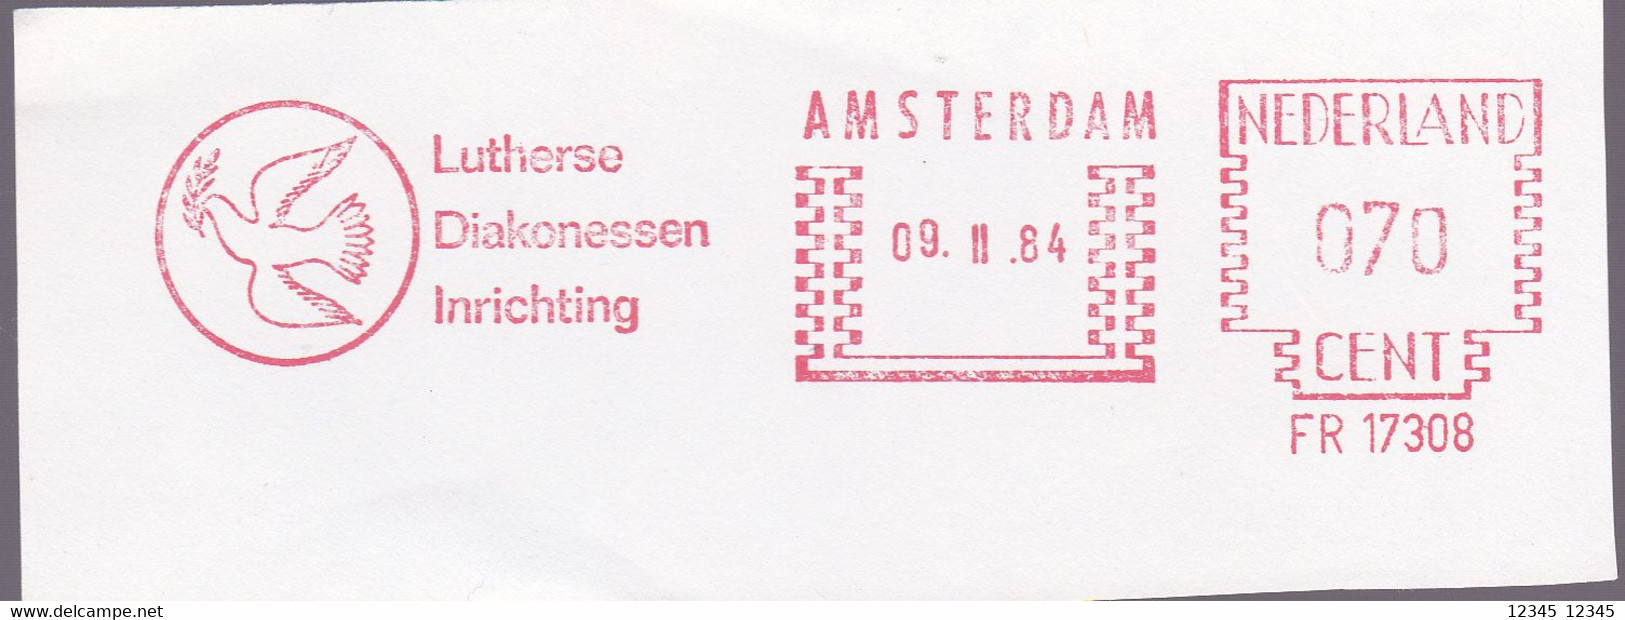 Amsterdam 1984, Lutherse Diakonessen Inrichting, Birds - Maschinenstempel (EMA)